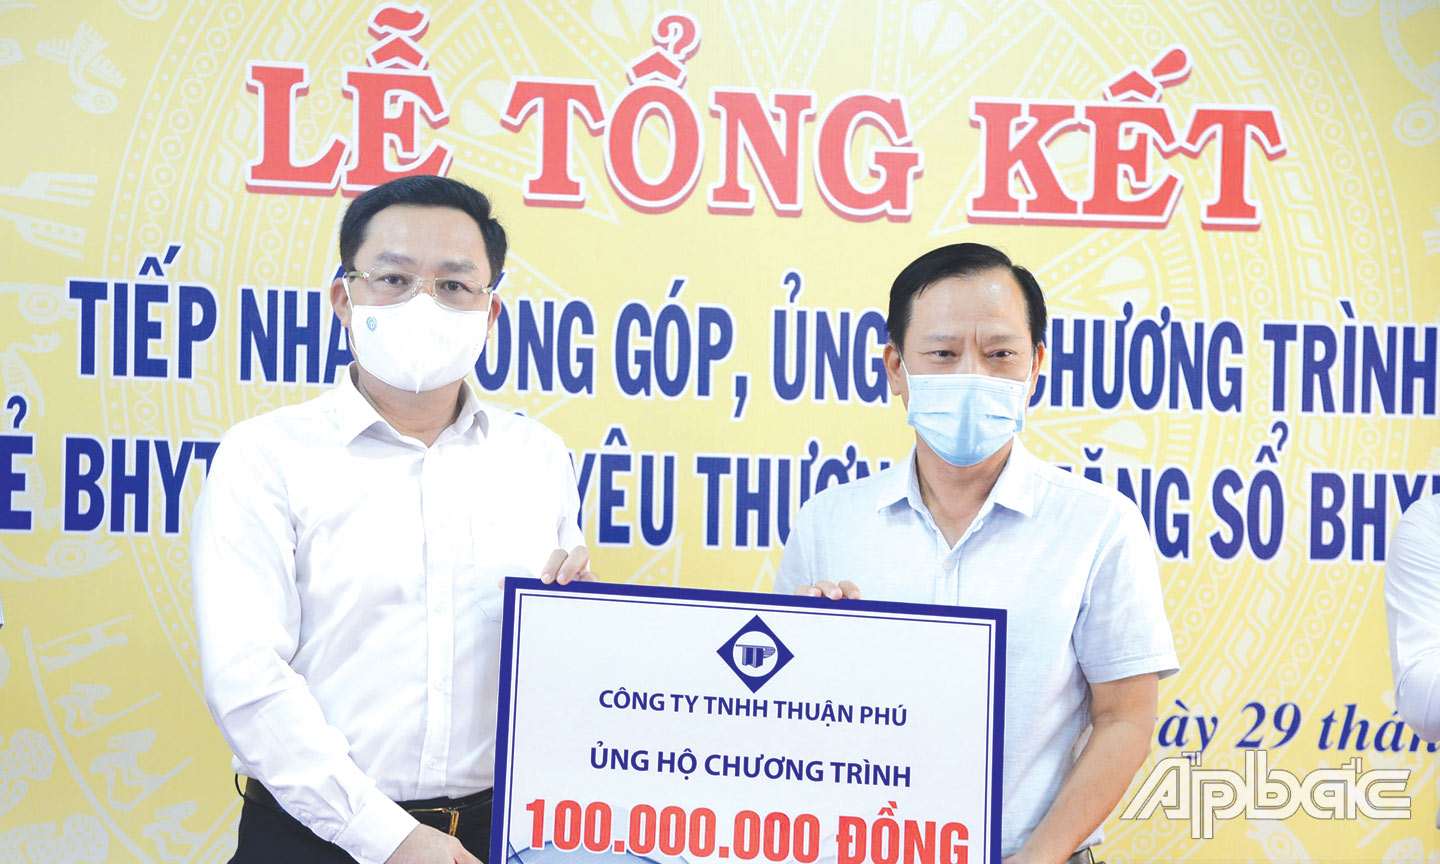 Đồng chí Võ Khánh Bình (bên trái) tiếp nhận kinh phí 100 triệu đồng ủng hộ 2 chương trình: “Hỗ trợ thẻ BHYT - Chia sẻ yêu thương” và  “Tặng sổ BHXH tự nguyện -  Của để dành khi về già” từ Công ty TNHH Thuận Phú. 